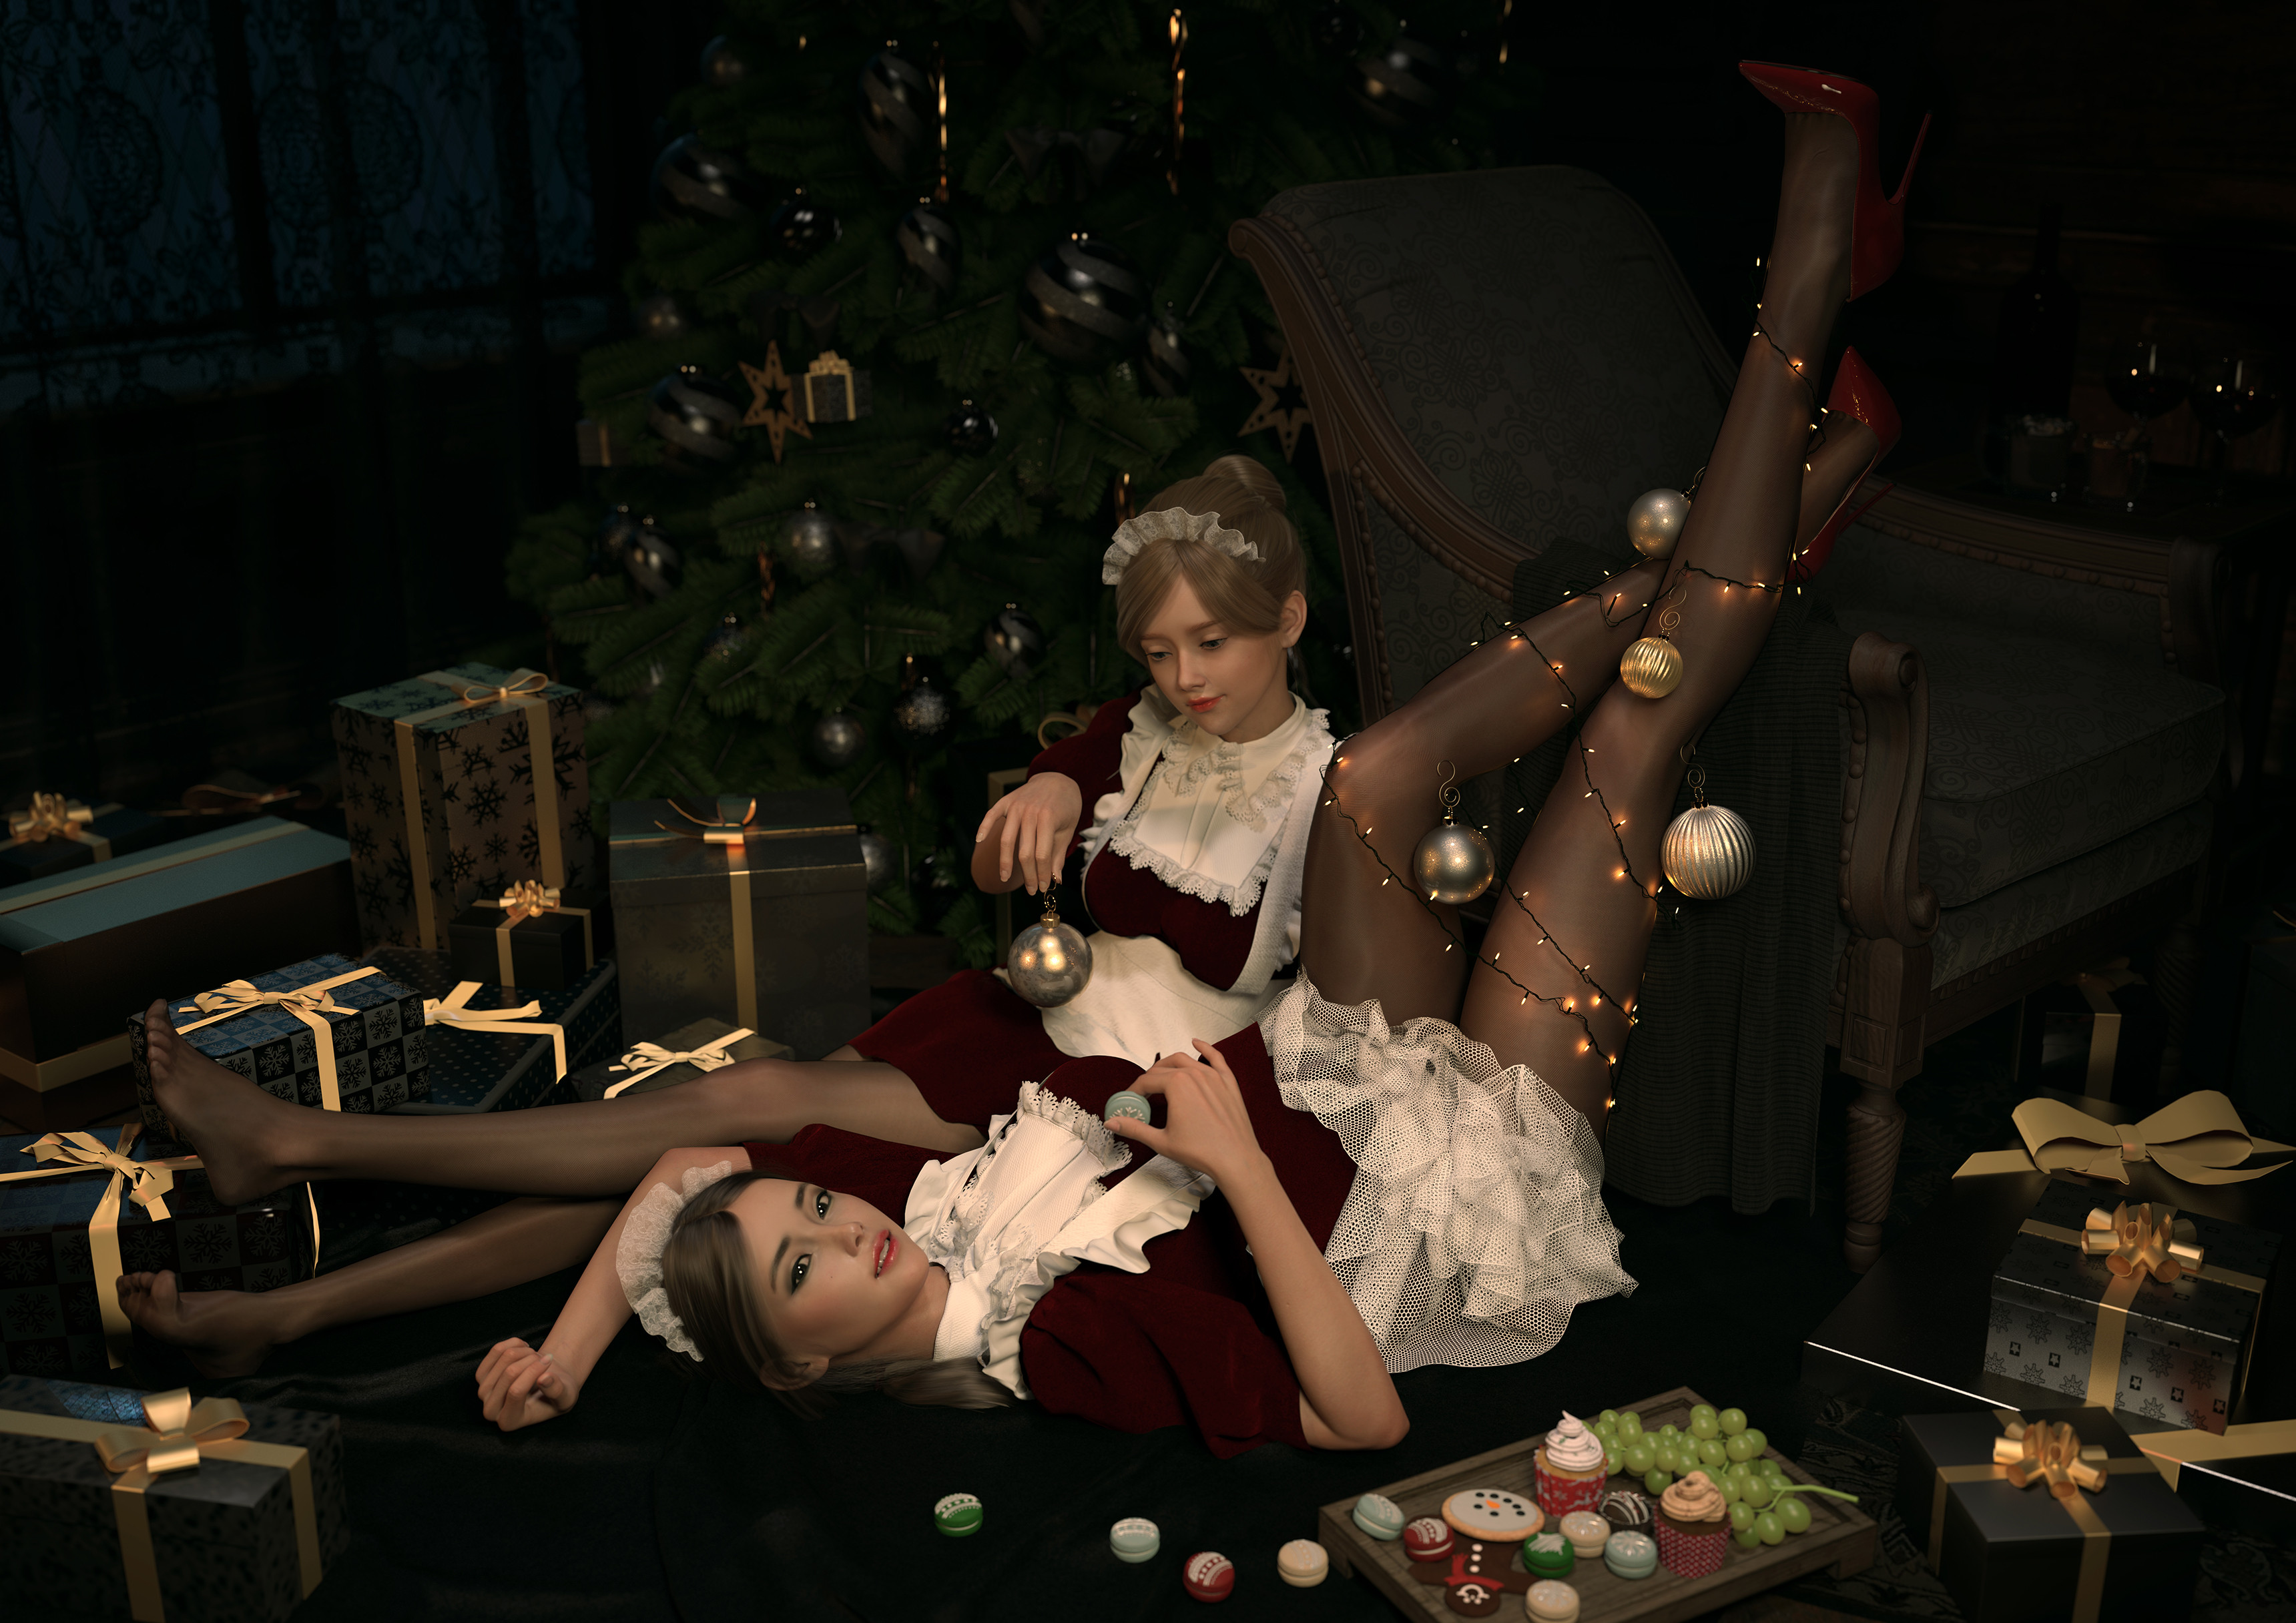 Lou LL CGi Women Two Women Maid Christmas Ornaments Maid Outfit Christmas Tree Christmas Presents 3440x2432